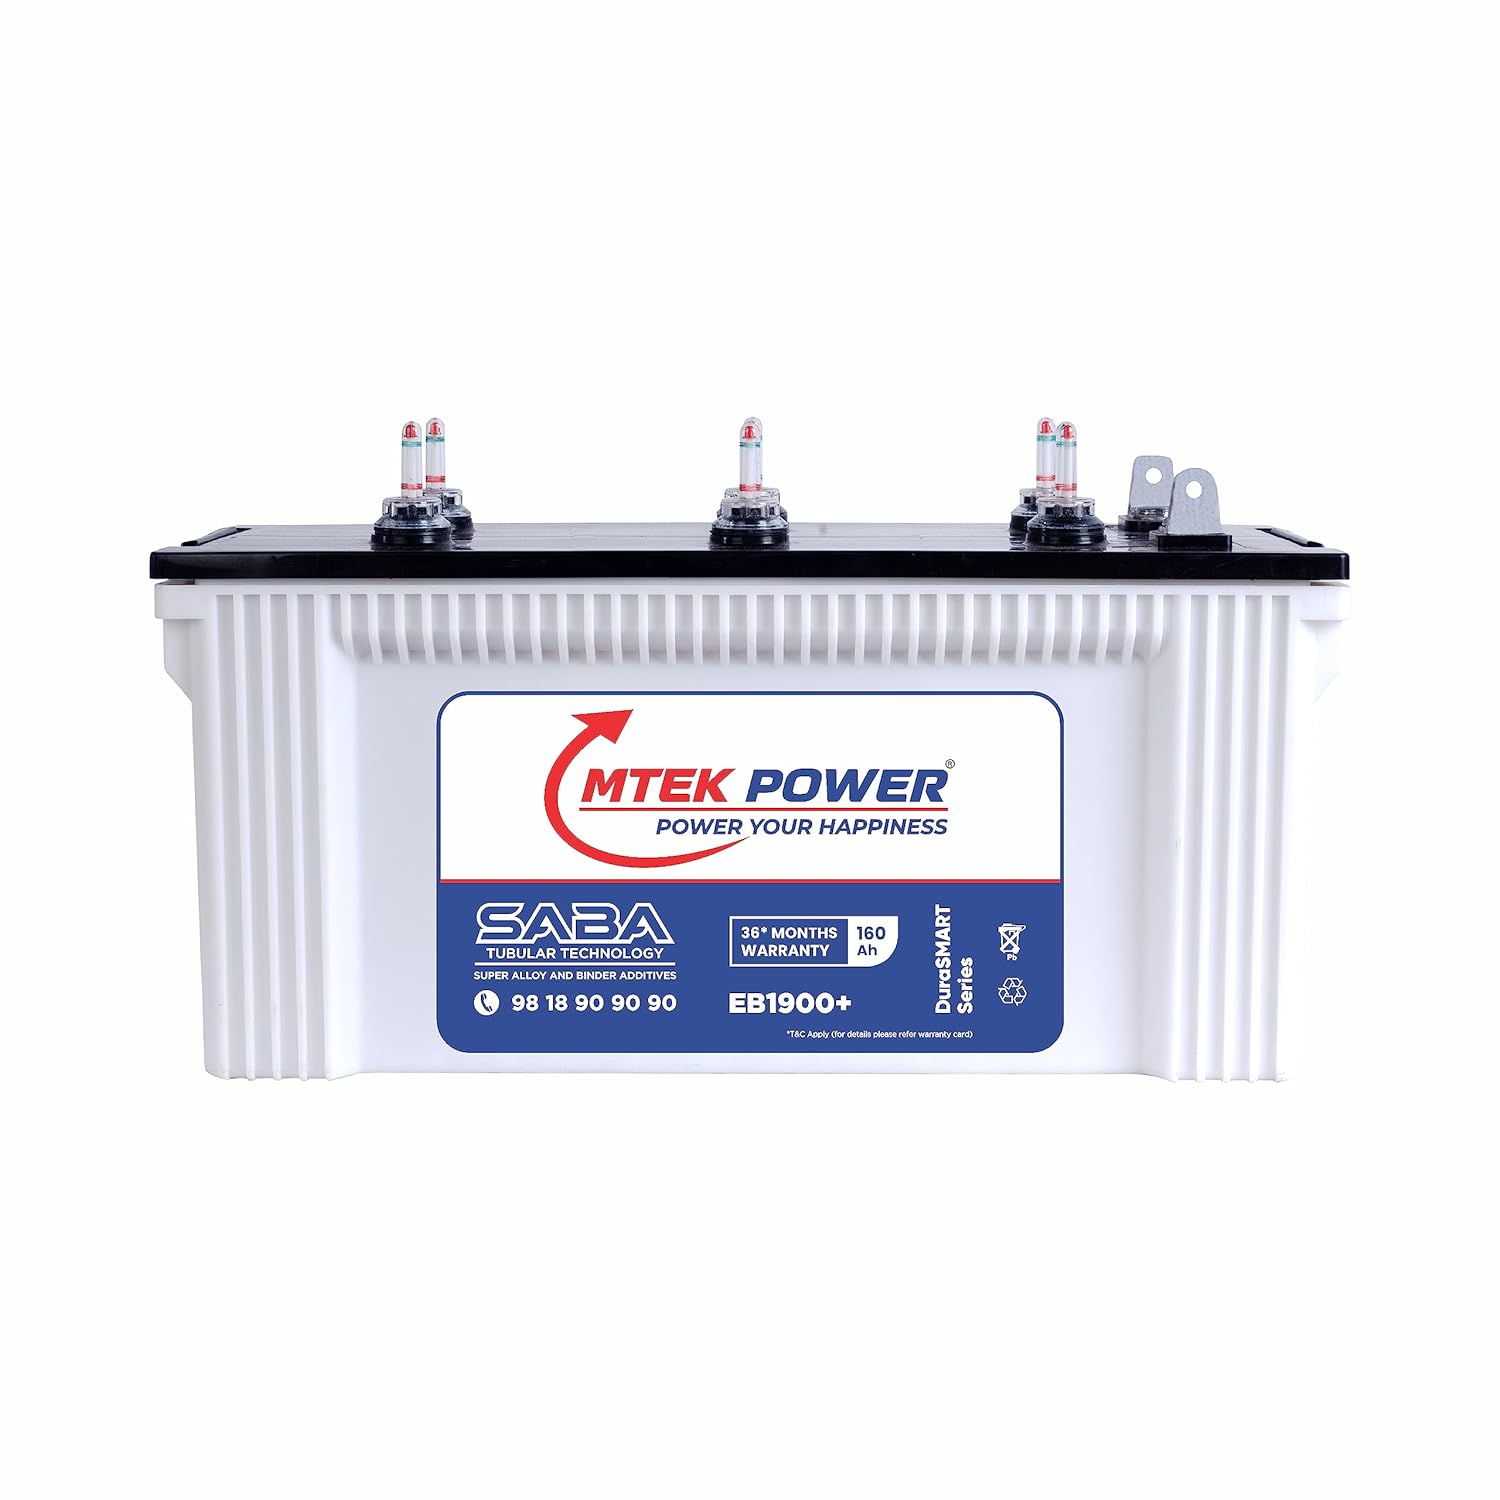 MTEKPOWER Durasmart Eb1900+ 160Ah/12V Tubular Inverter Battery For Longer Battery Life of Home, Office & Shops Use 